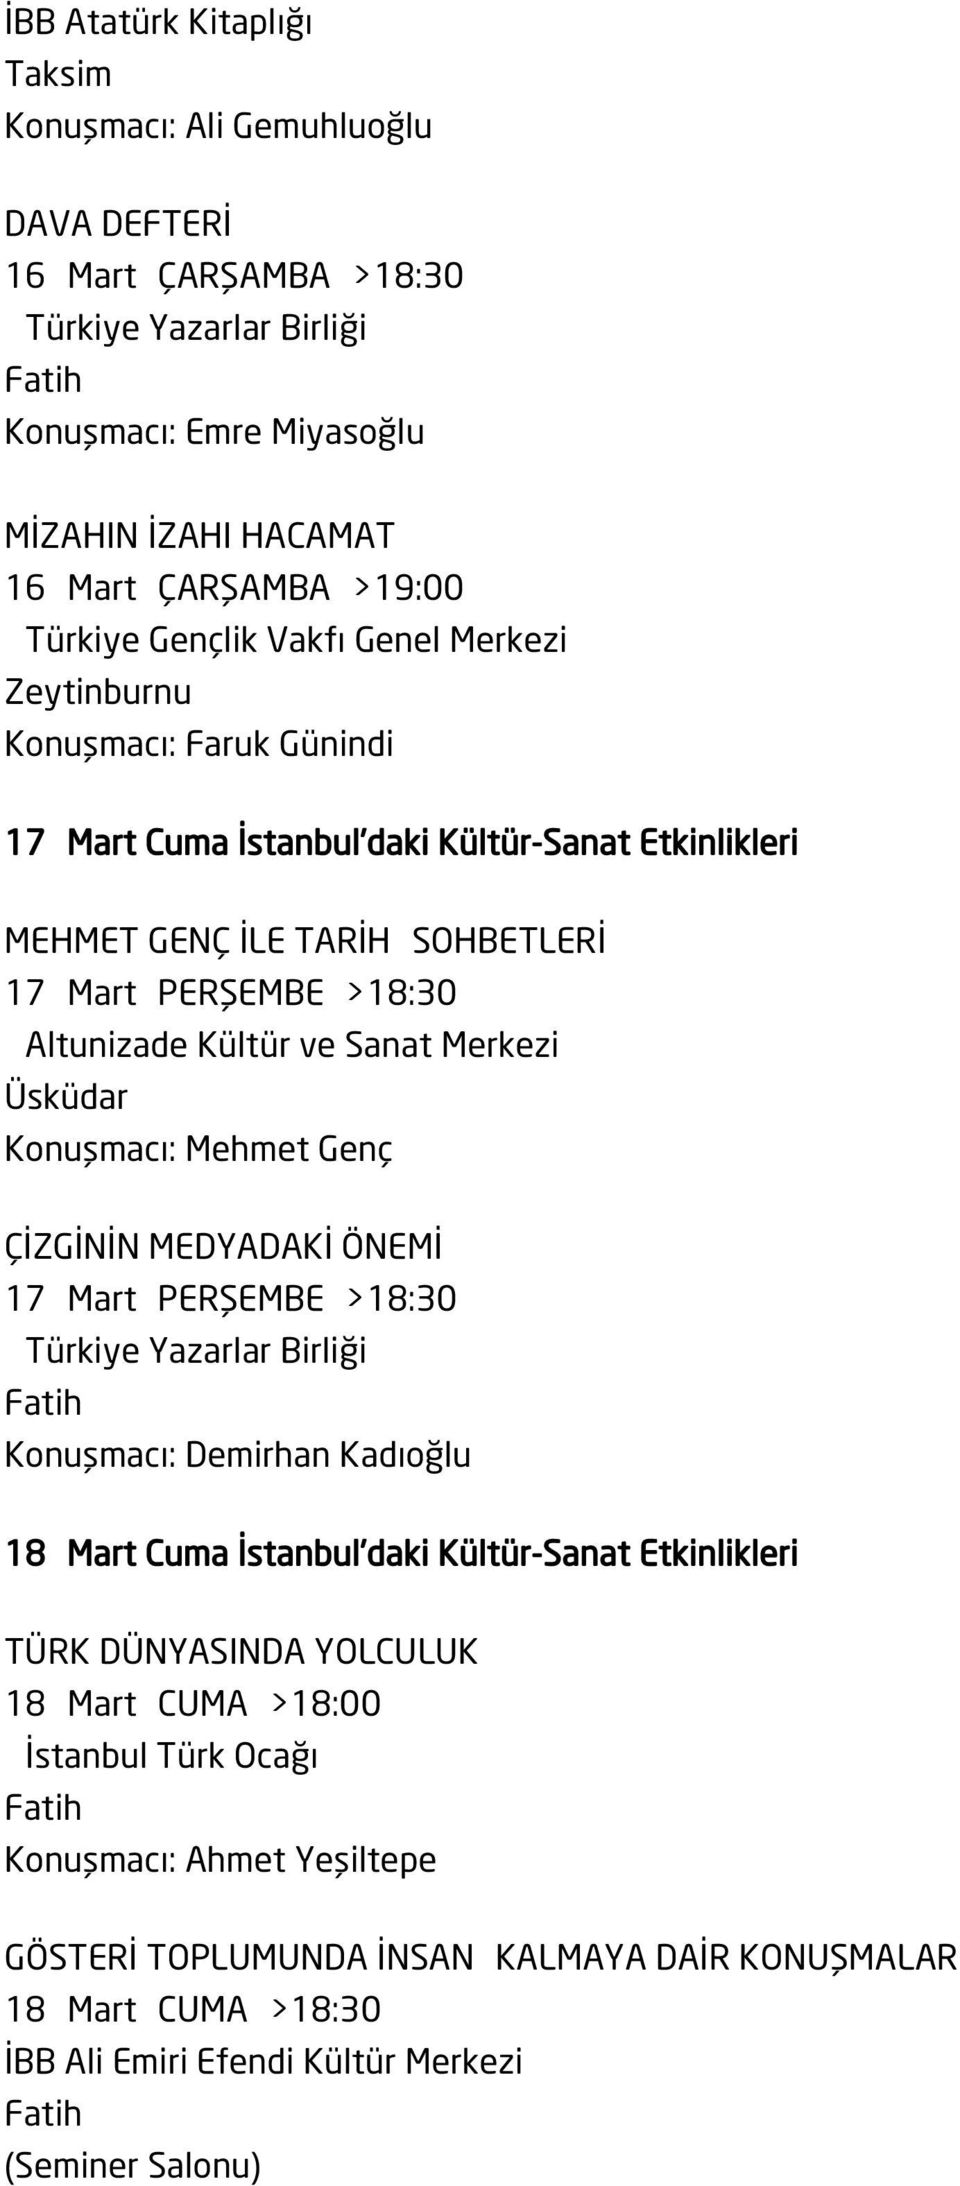 Altunizade Kültür ve Sanat Merkezi Konuşmacı: Mehmet Genç ÇİZGİNİN MEDYADAKİ ÖNEMİ 17 Mart PERŞEMBE >18:30 Konuşmacı: Demirhan Kadıoğlu 18 Mart Cuma İstanbul'daki Kültür-Sanat